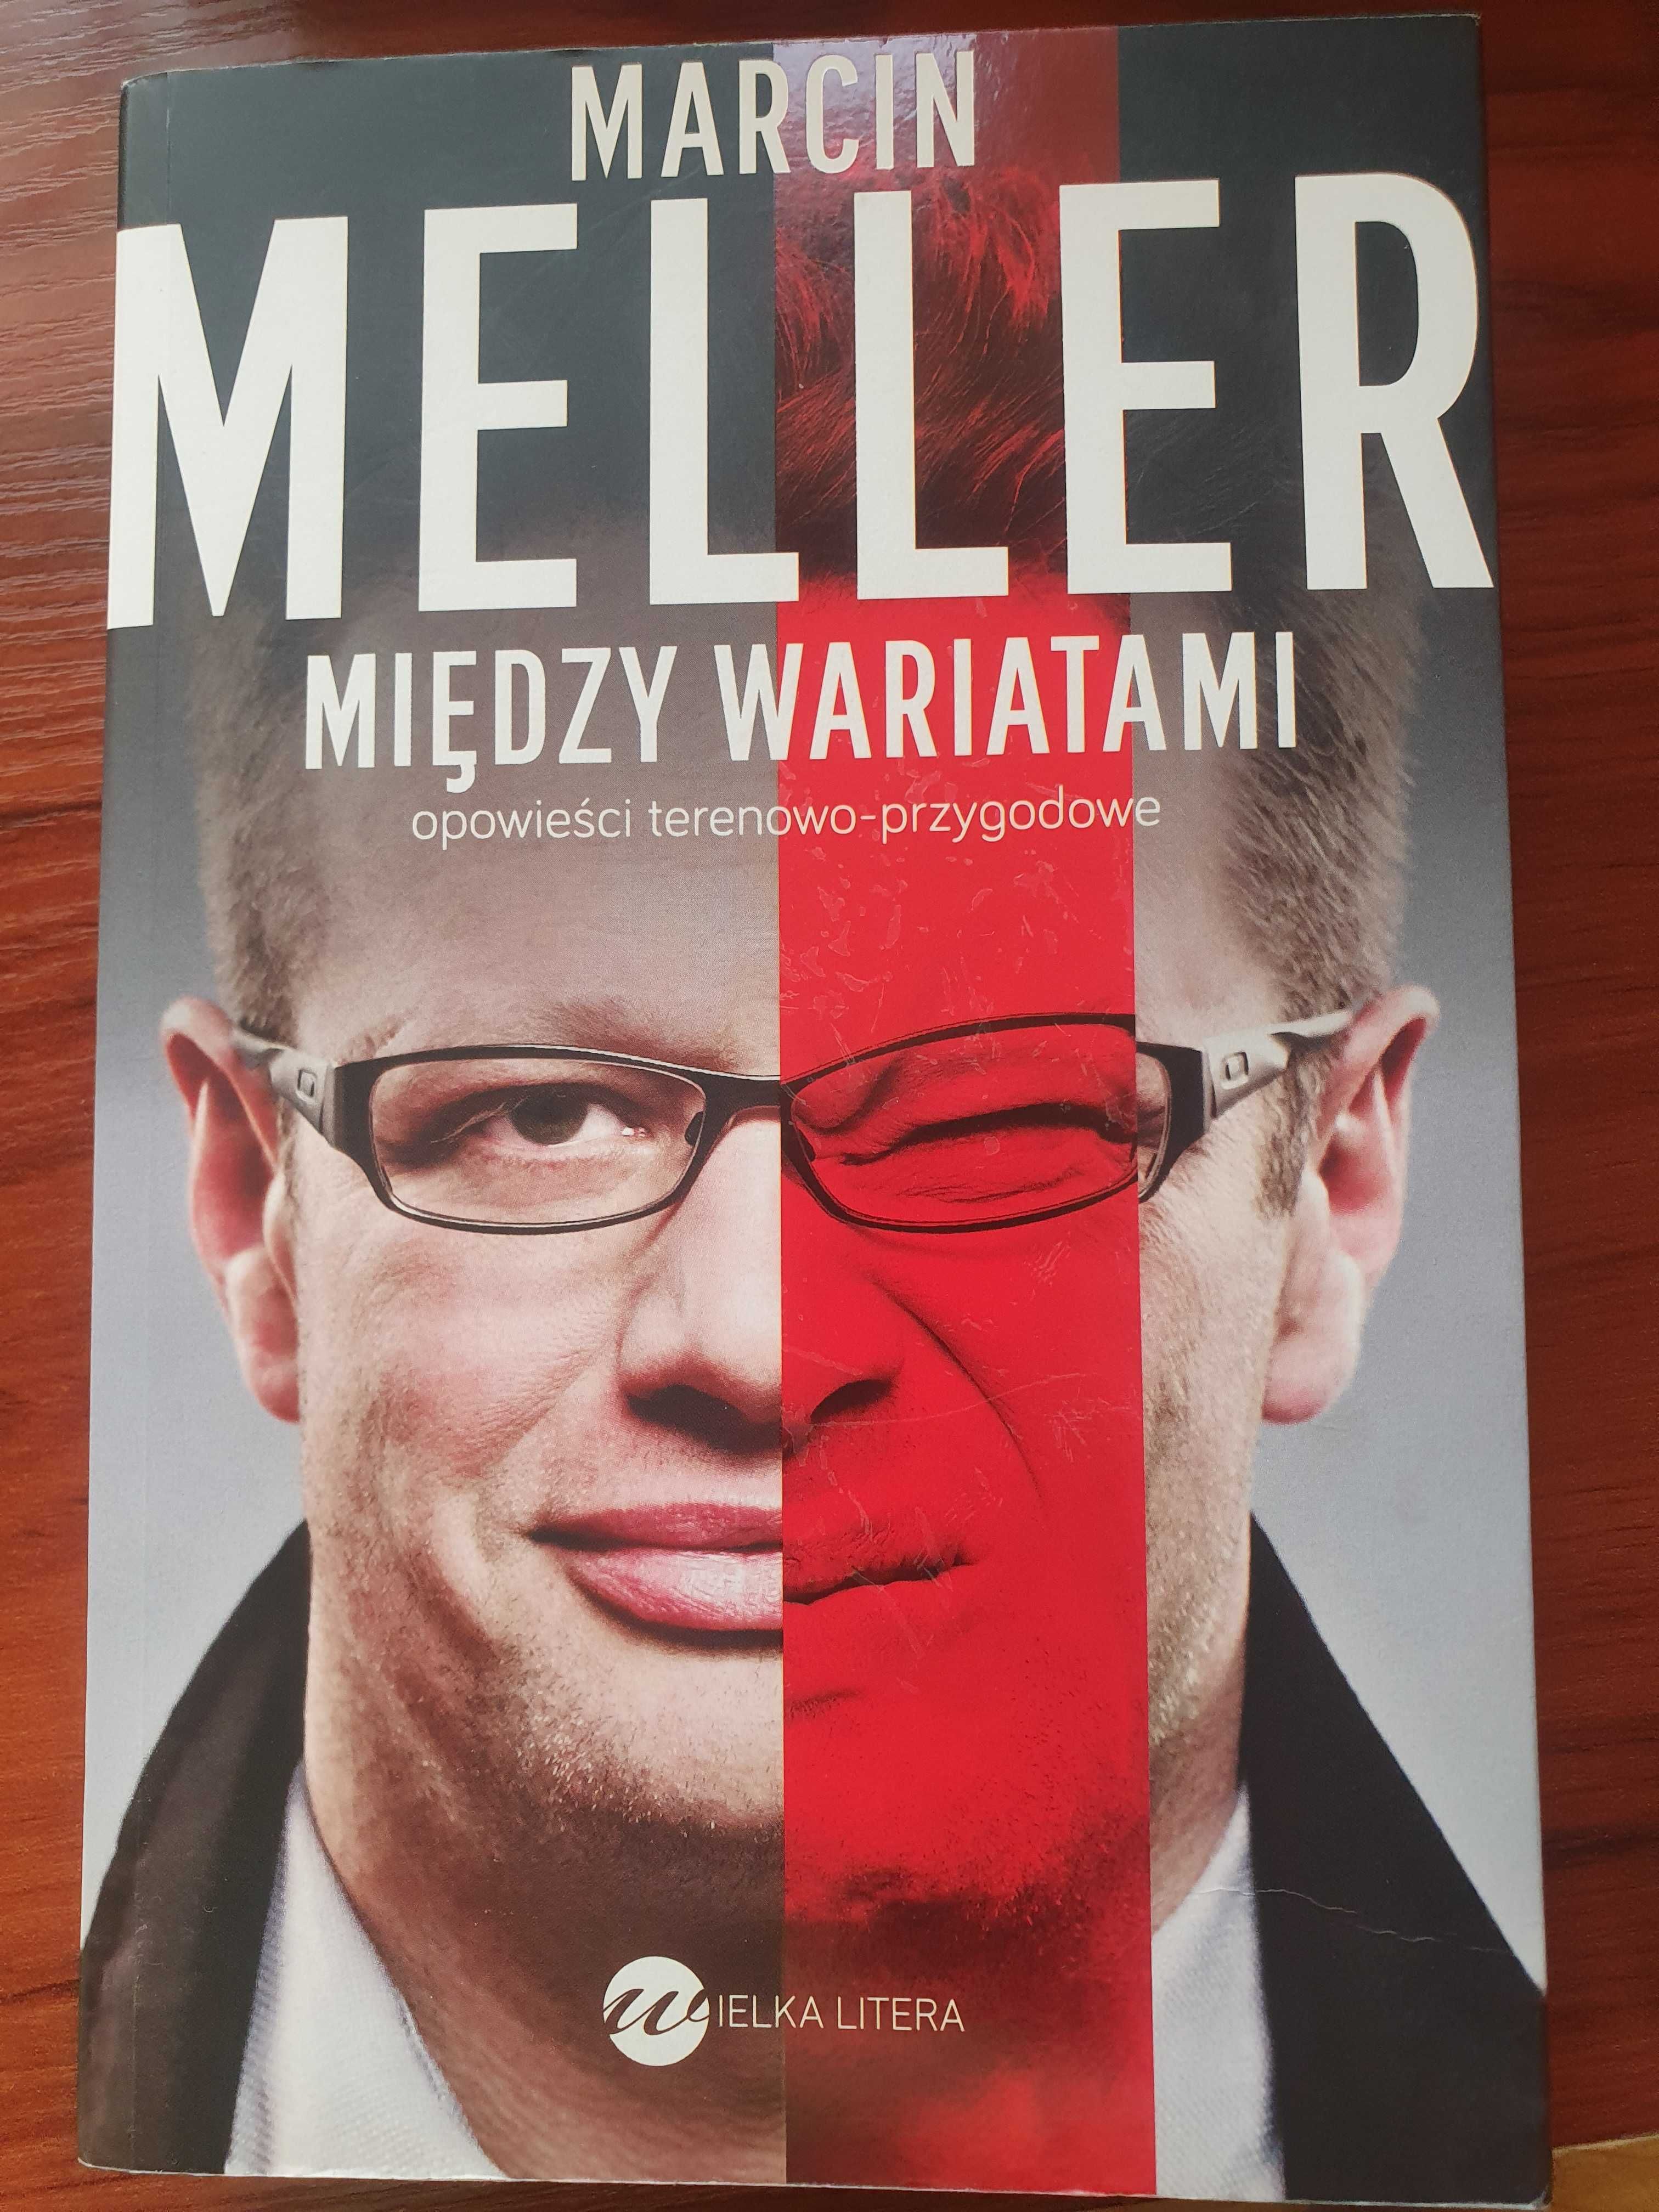 Marcin Meller "Między wariatami. Opowieści terenowo-przygodowe"